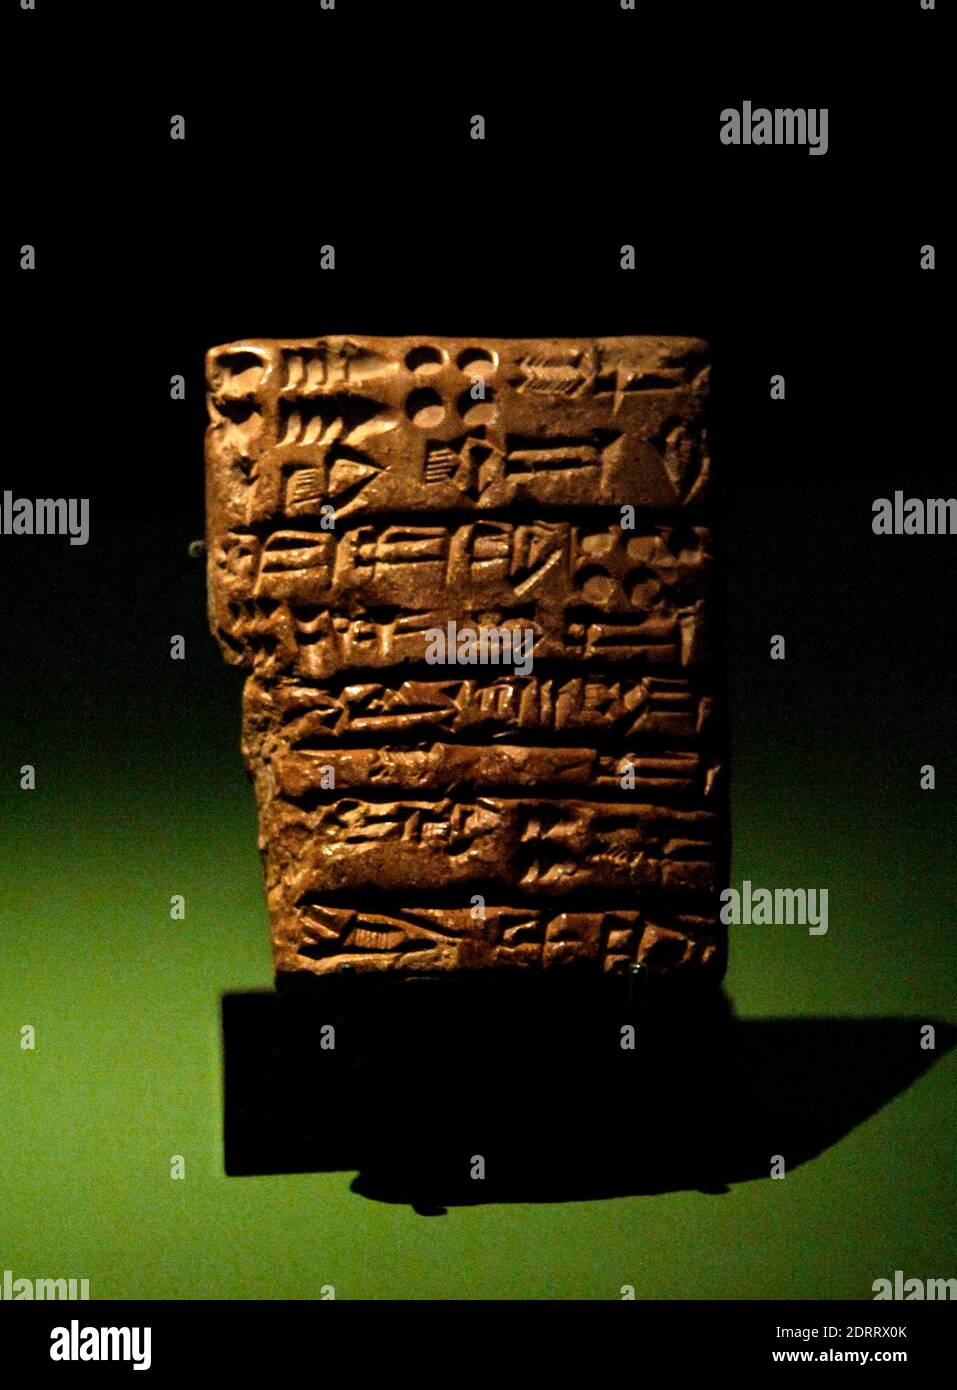 Tablet in akkadischer Sprache. Wirtschaftstext datiert auf das dritte Jahr von Shar-Kali-Sharri's Regierungszeit (c. 2217 V. CHR.-2293 V. CHR.). Lehm. Von Girsu (jetzt Tello). Louvre Museum. Paris, Frankreich. Stockfoto